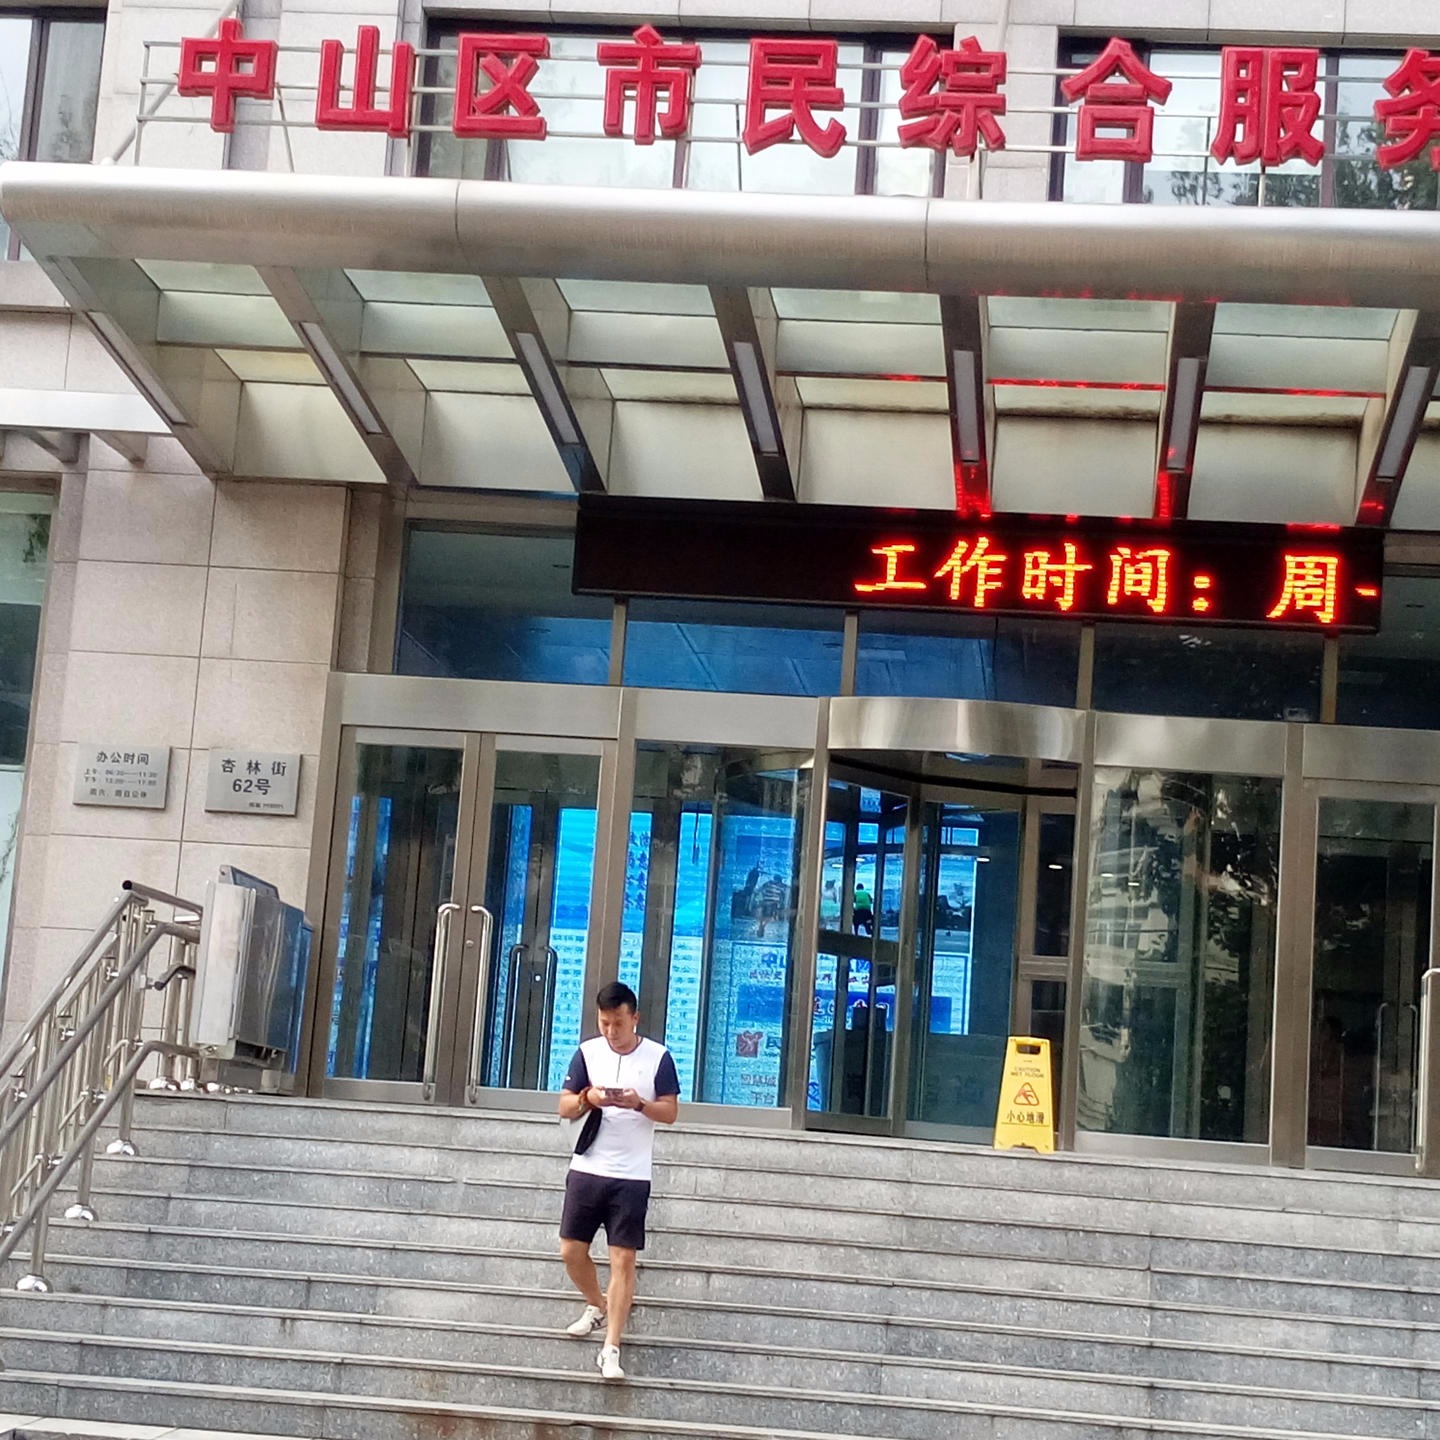 盖州市 老年中心斜挂式升降平台 启运北京智能无障碍平台价格 求购楼梯电梯安装